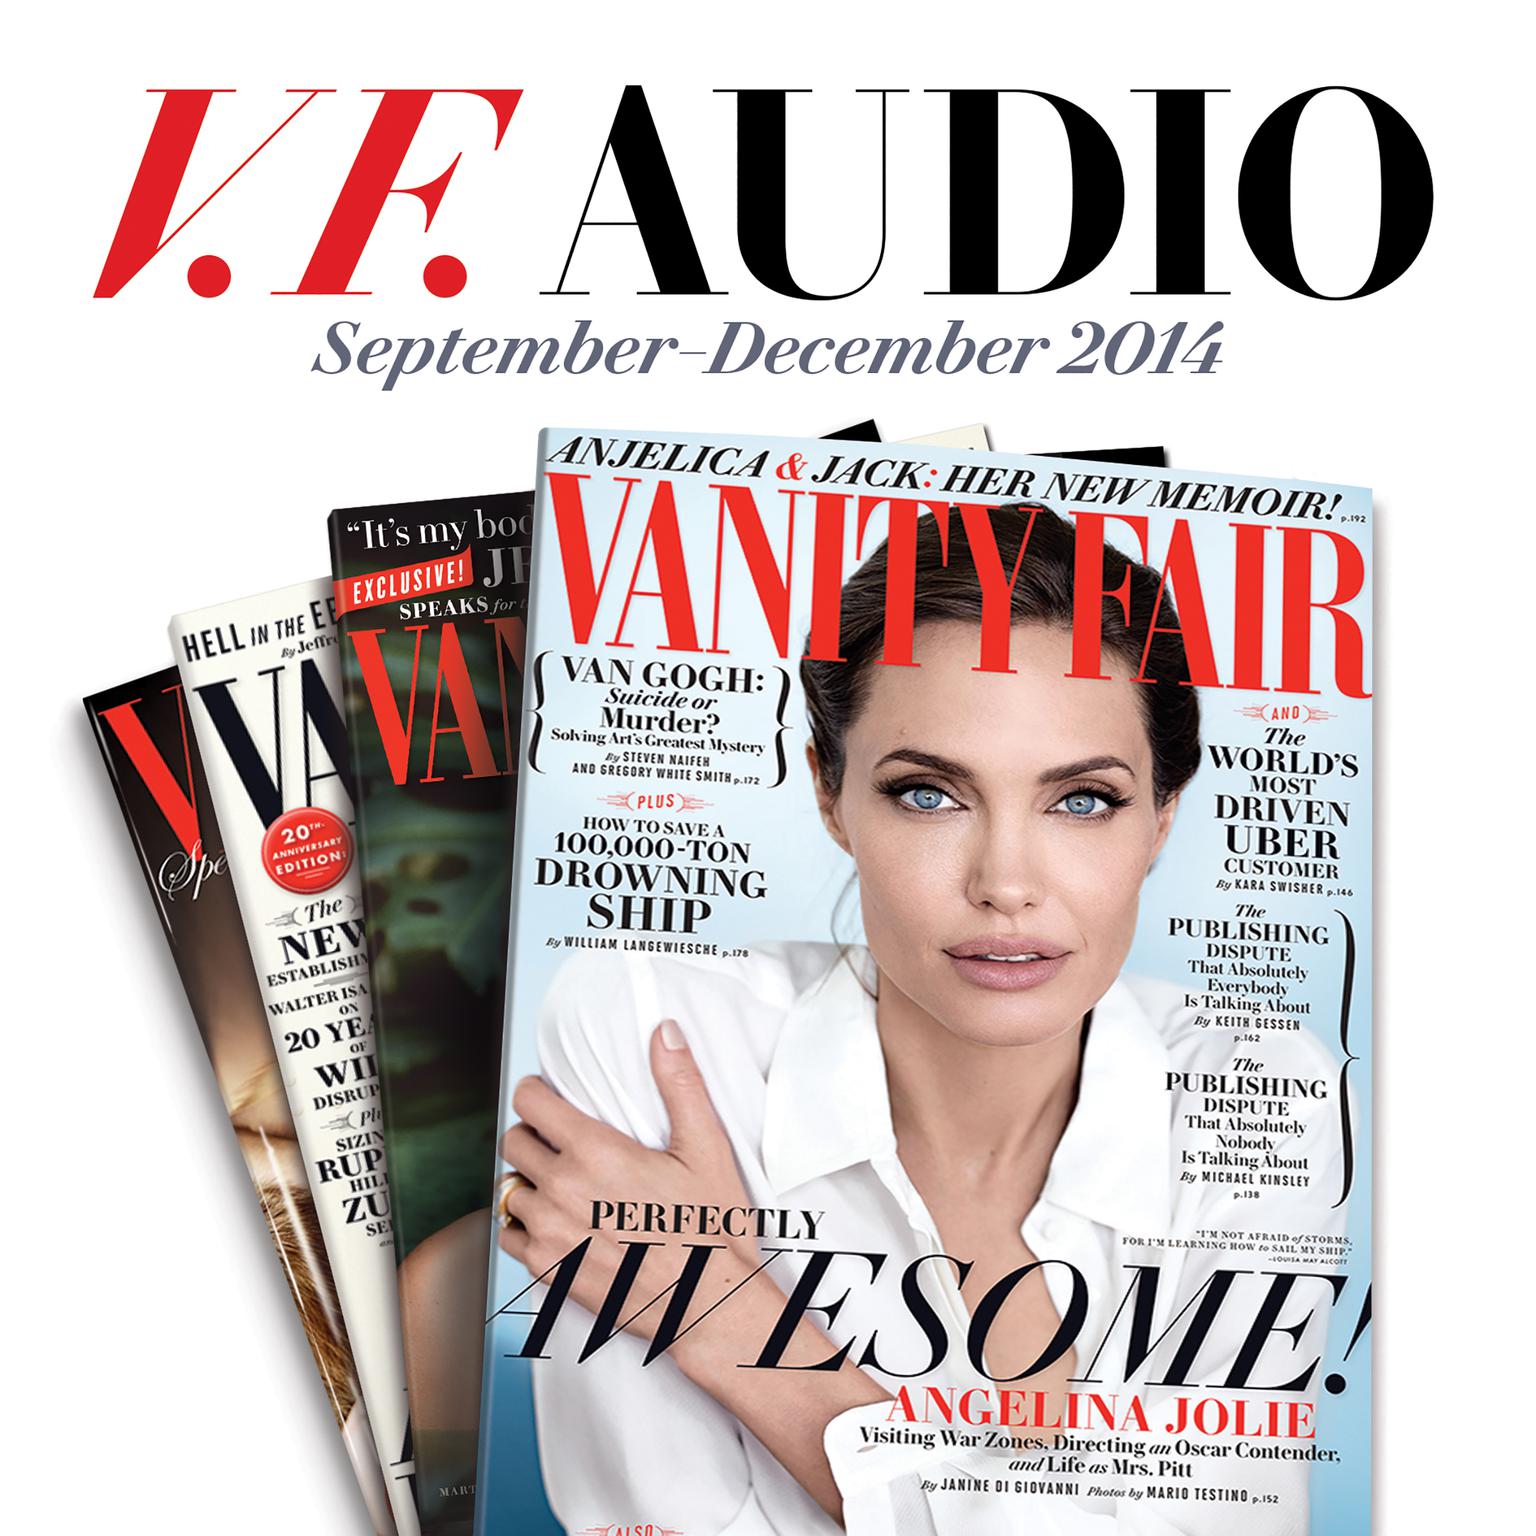 Vanity Fair: September–December 2014 Issue (Abridged) Audiobook, by Vanity Fair